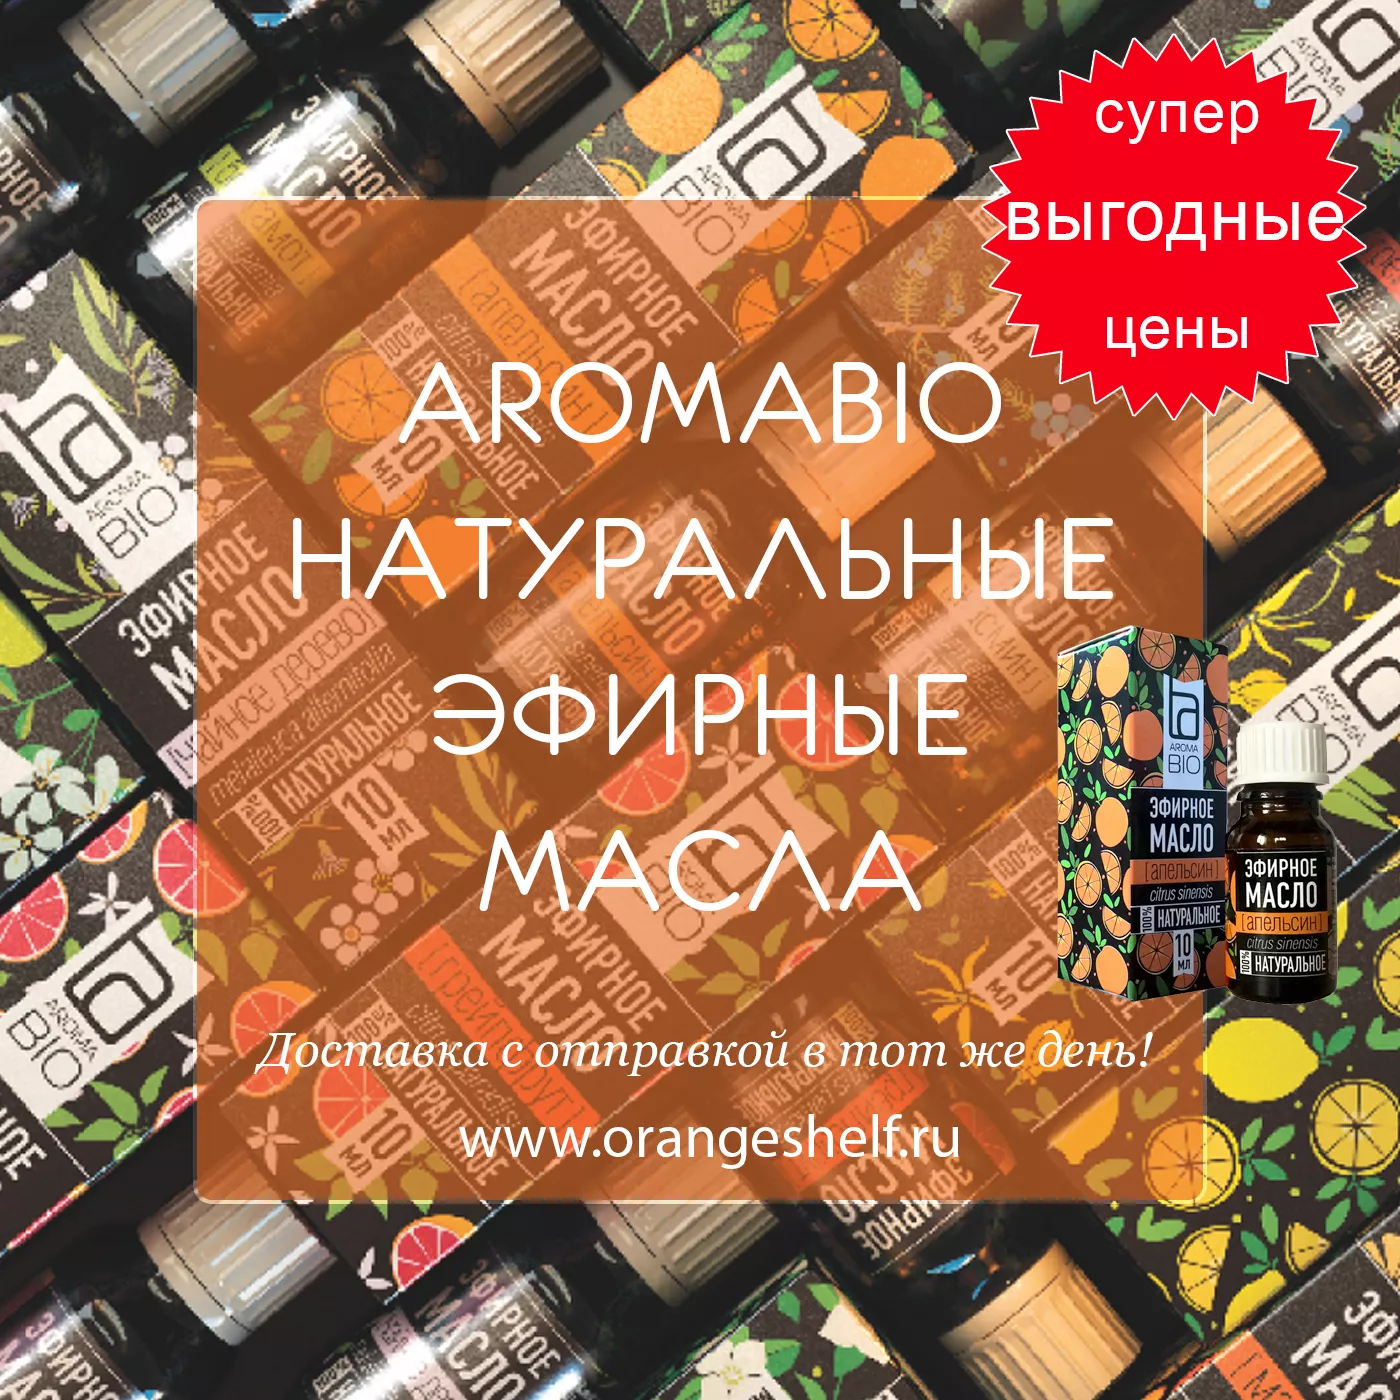 AromaBio натуральные эфирные масла по очень выгодным ценам. #orangeshelfru